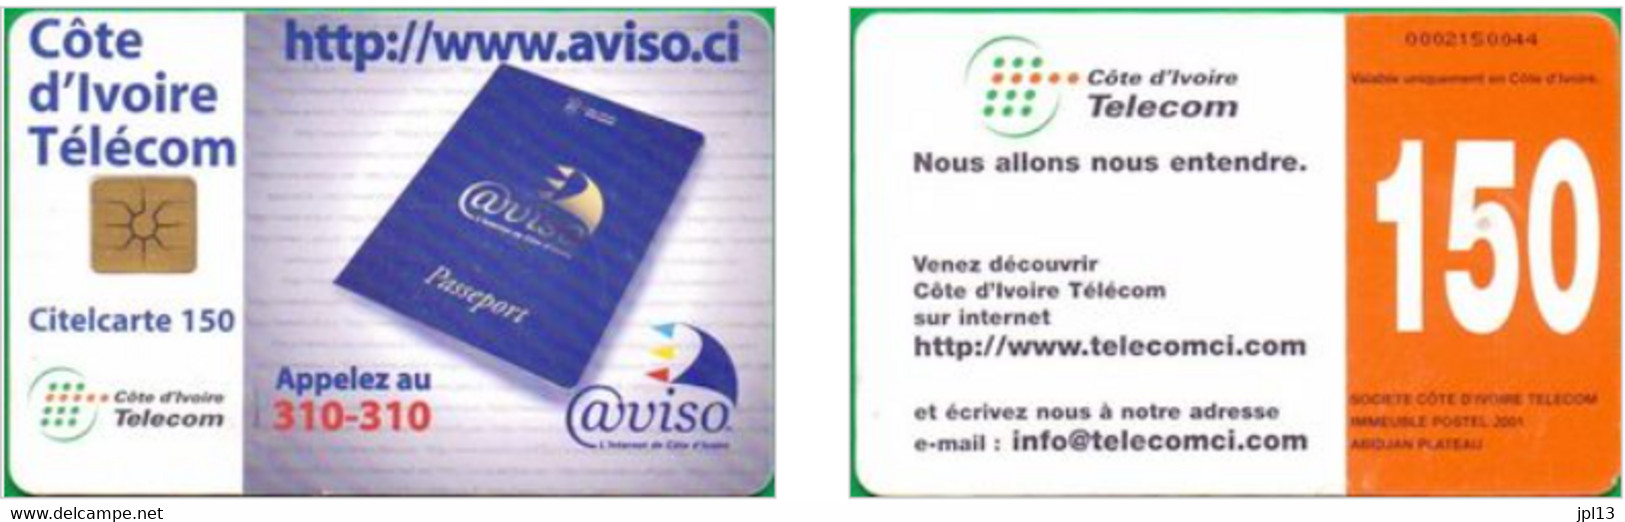 Télécarte à Puce Côte D'Ivoire Côte D'Ivoire Télécom - Aviso, Puce Gem1B White/Gold - Ivory Coast